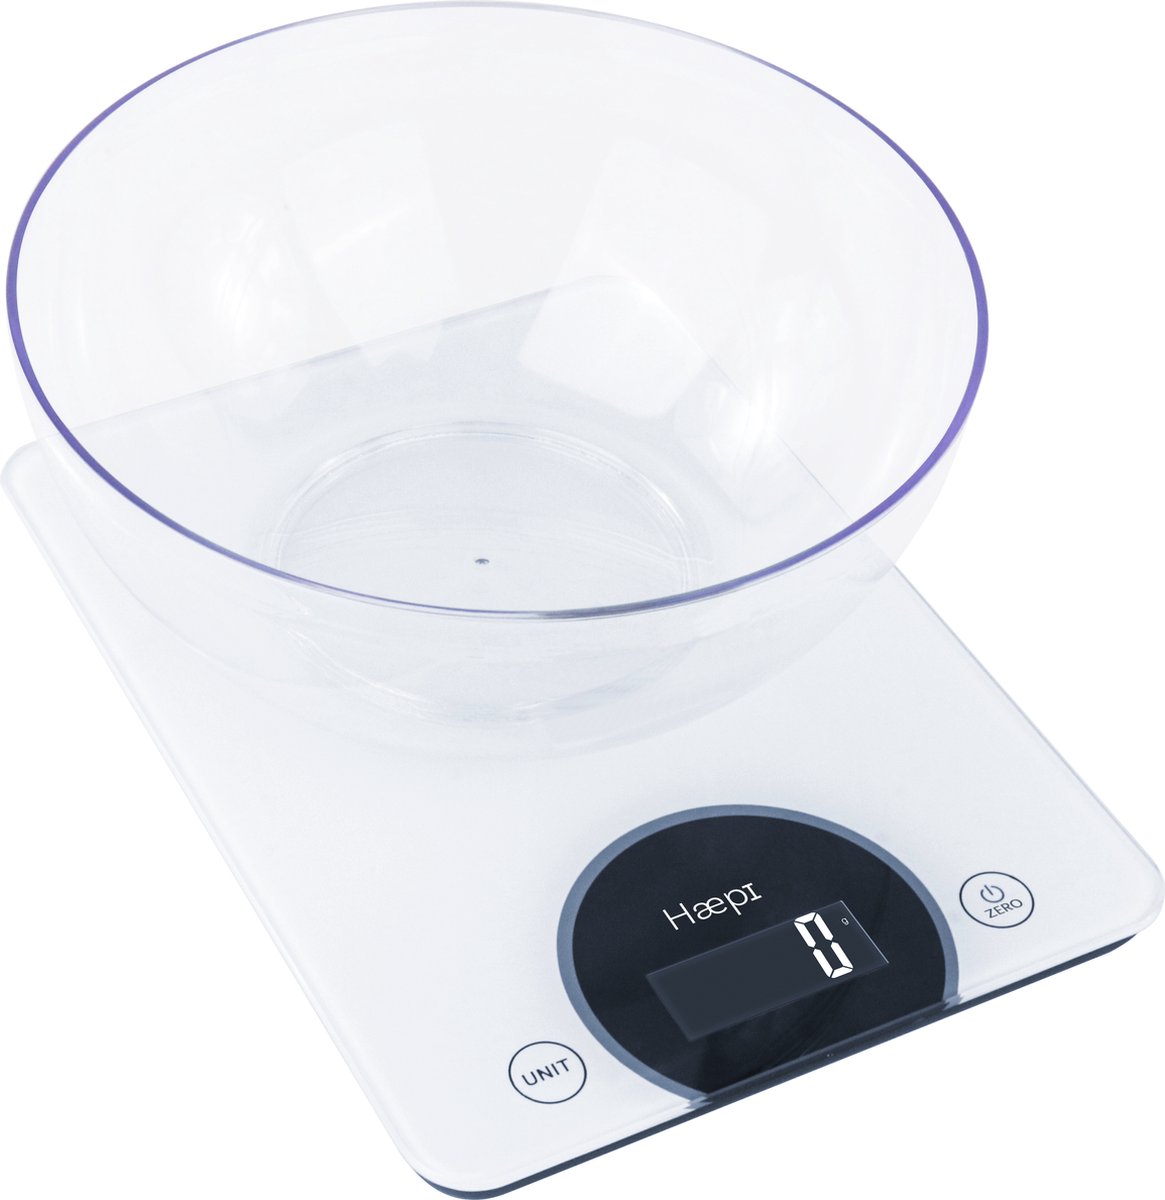 Haepi - Elektronische keukenweegschaal uit gehard glas met hoge capaciteit en precisie 15 kg/1g, tarrafunctie, groot plateau ideaal voor patisserie, inbegrepen kom, batterijen inbegrepen, 15 jaar garantie